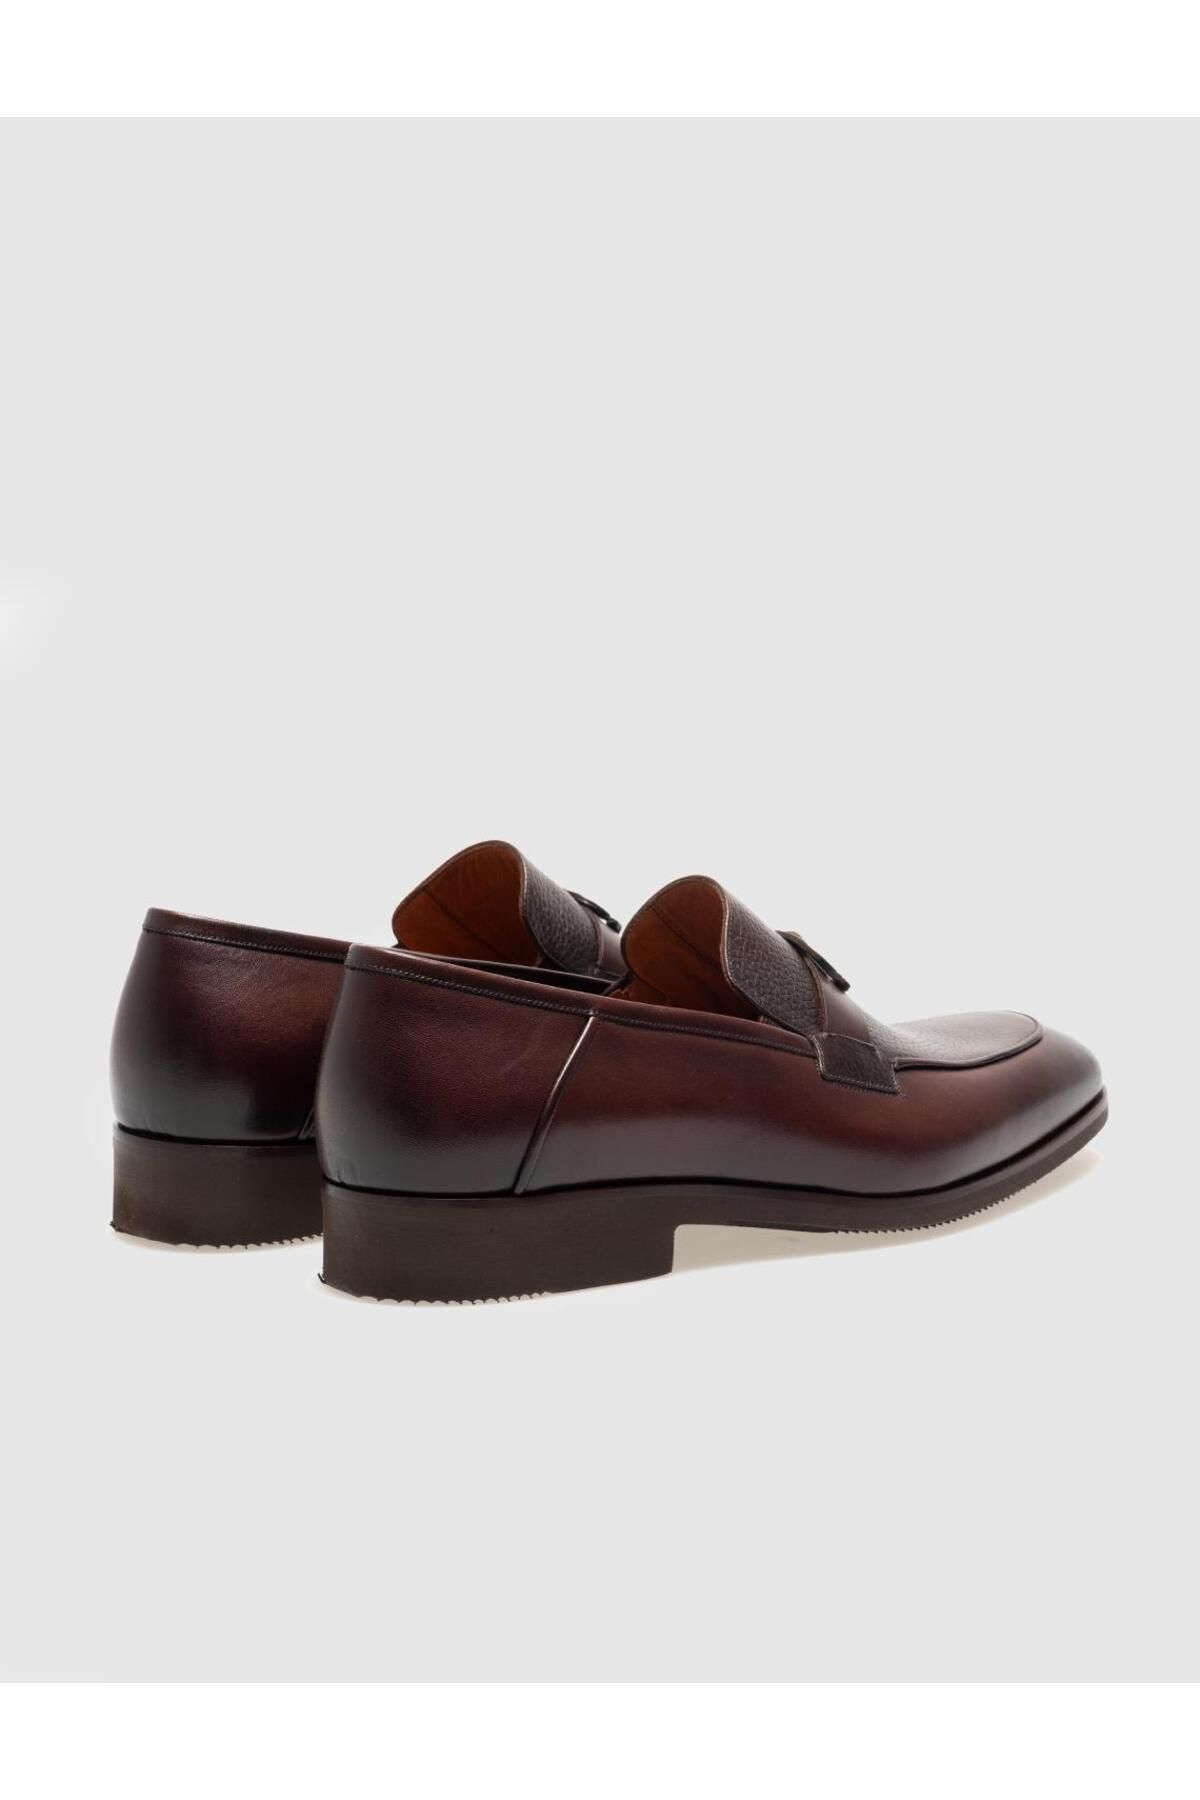 Cabani کفش های کلاسیک مردانه قهوه ای چرمی واقعی